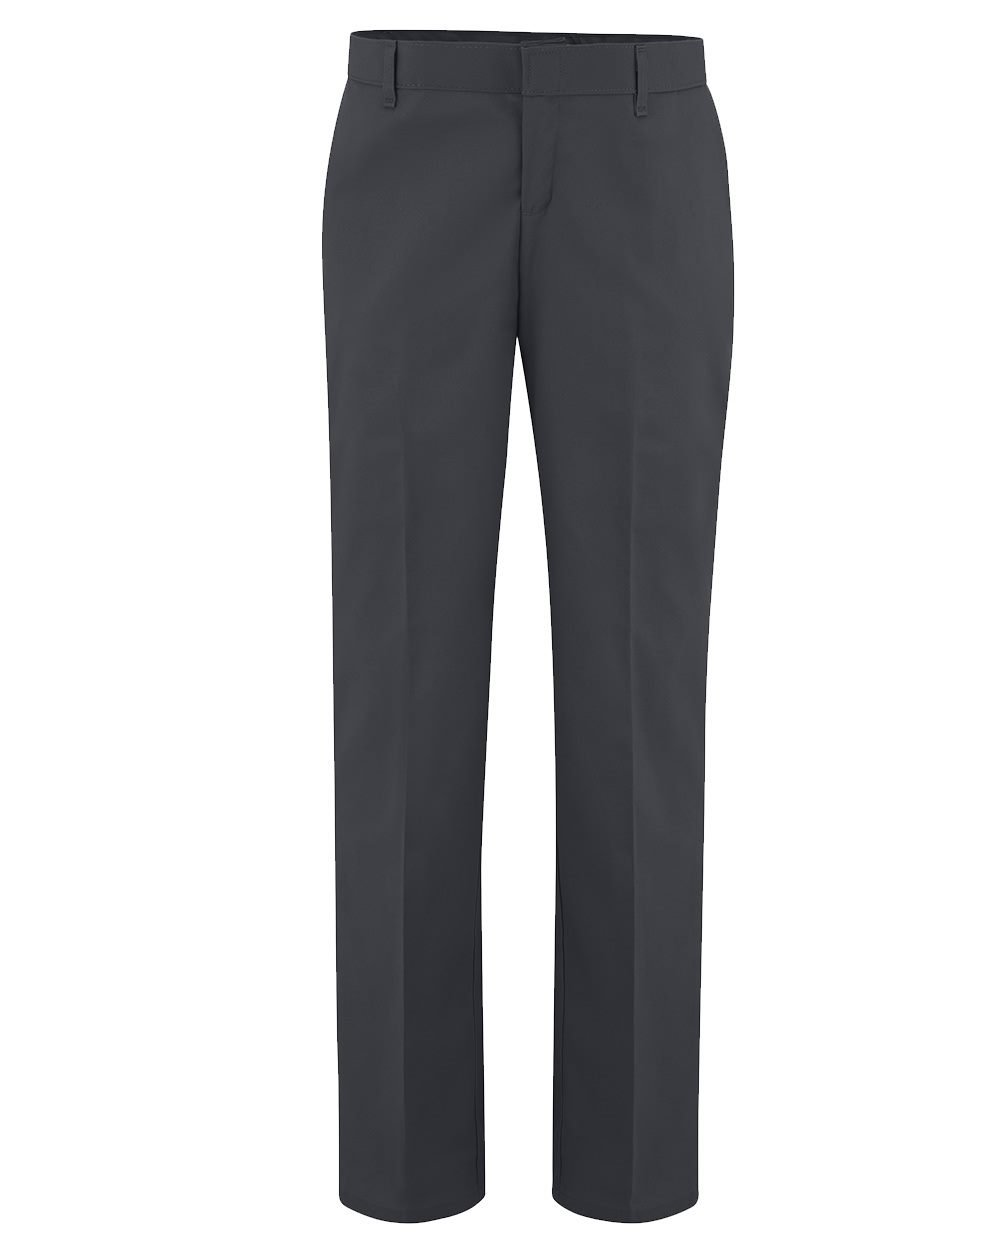 Dickies FP21 - Women's Premium Flat Front Pants